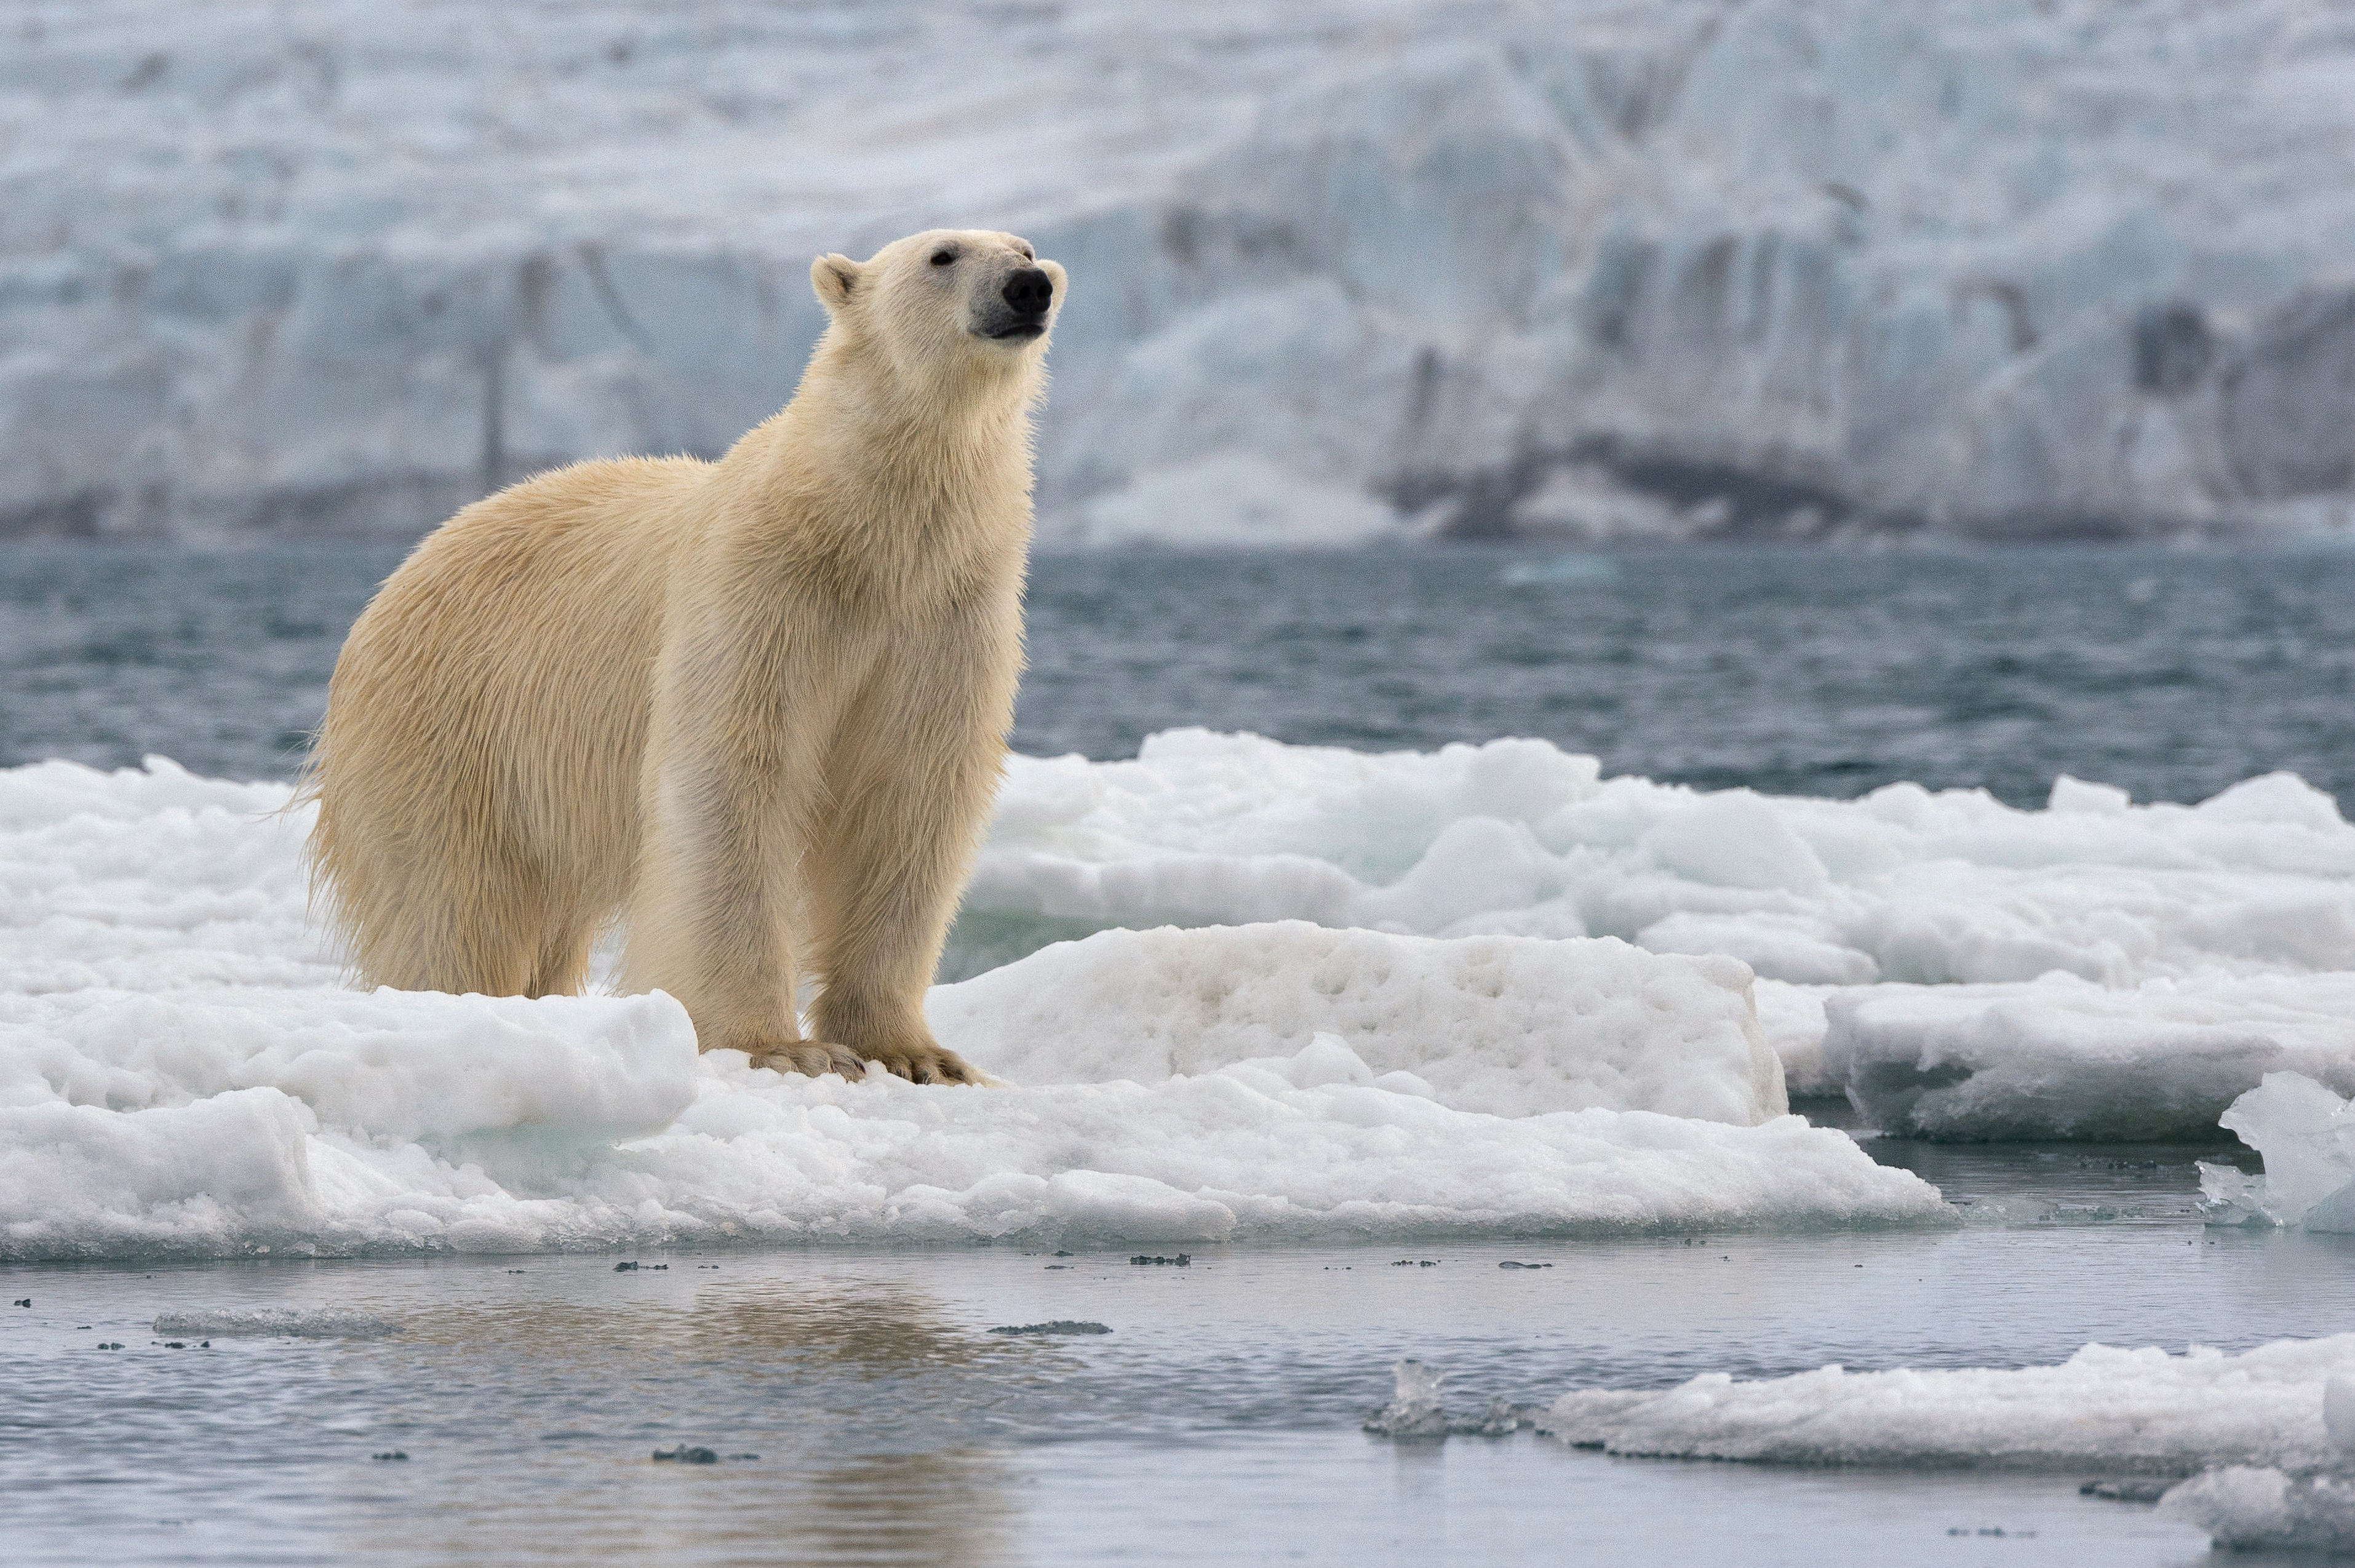 Auf der Insel gibt es mehr Eisbären als Menschen